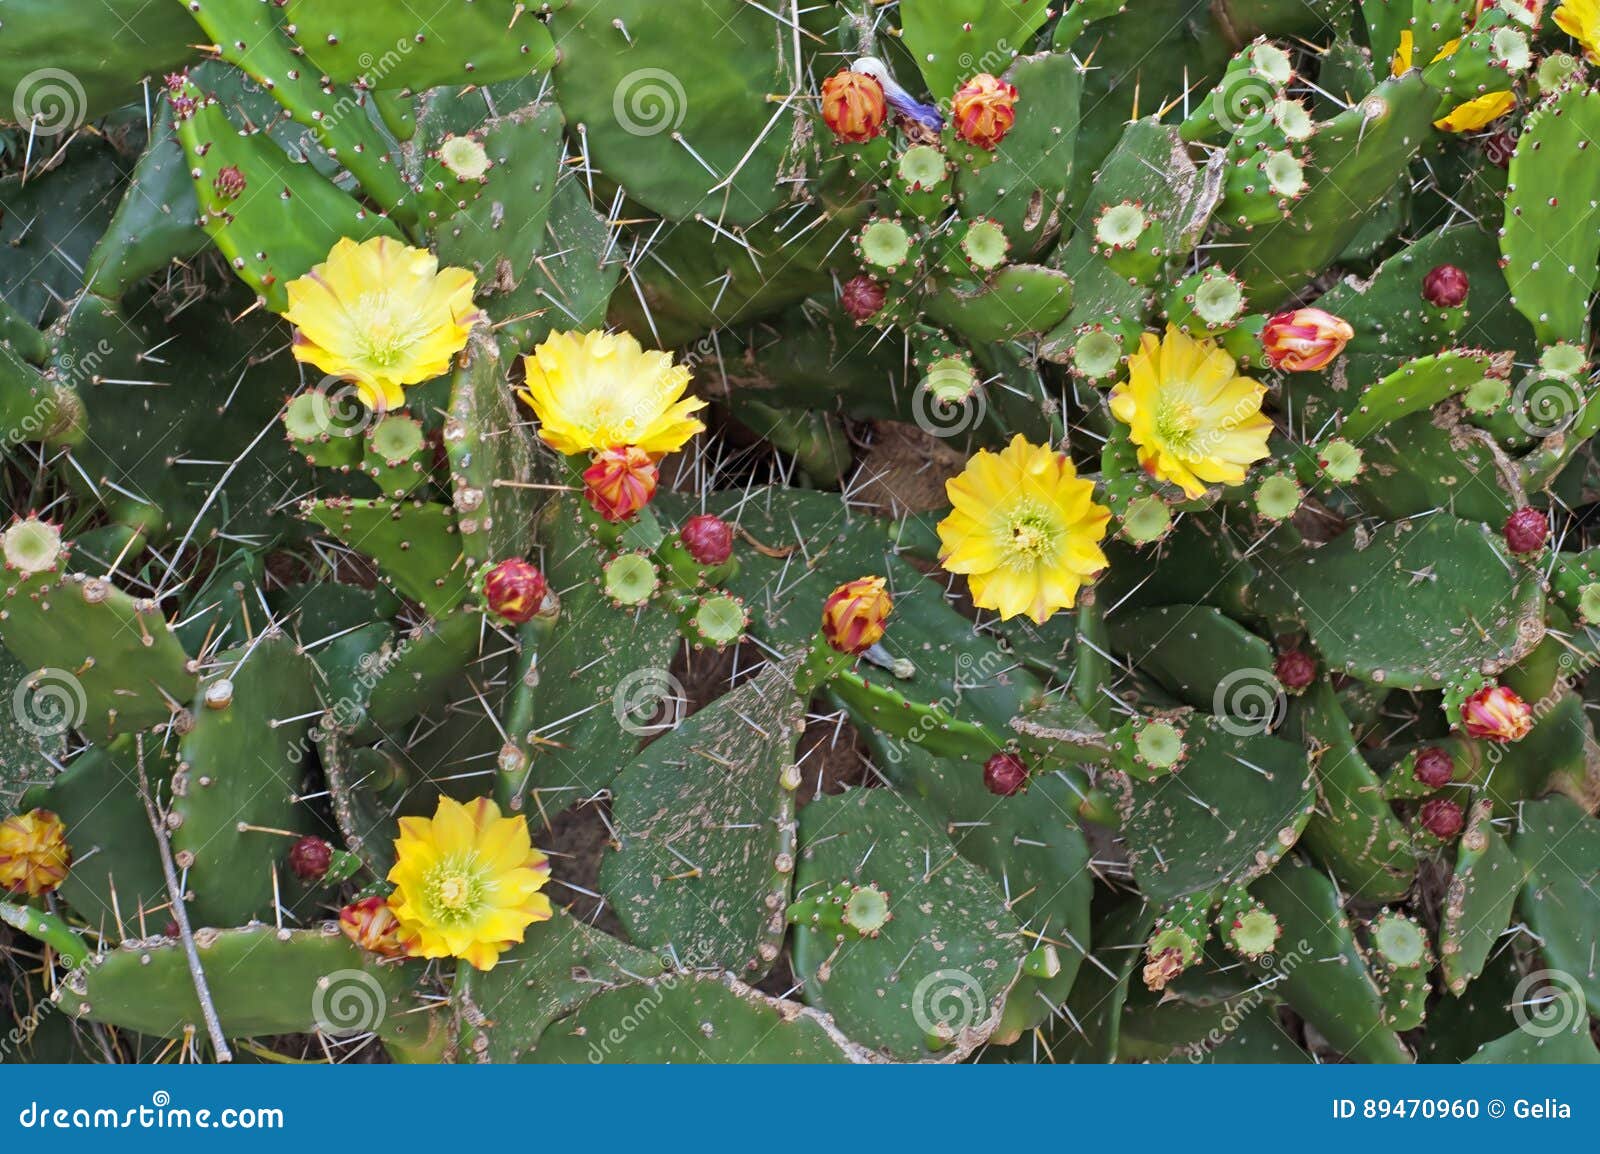 Flower summer indica Autoflowering Strains